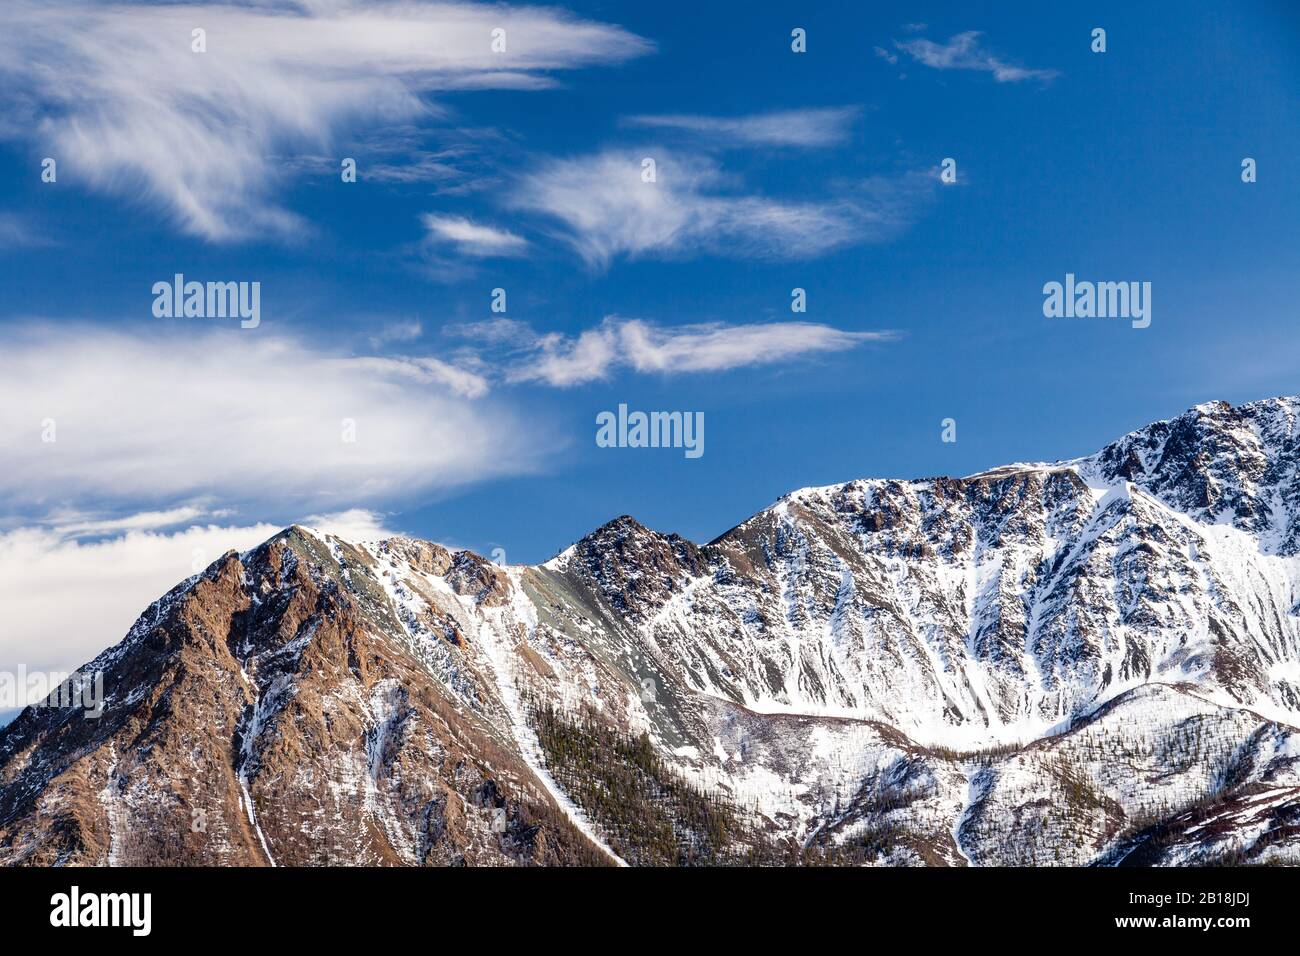 Cima di montagna innevata del ghiacciaio contro cielo blu, nuvole, copia spazio, luogo per il testo Foto Stock